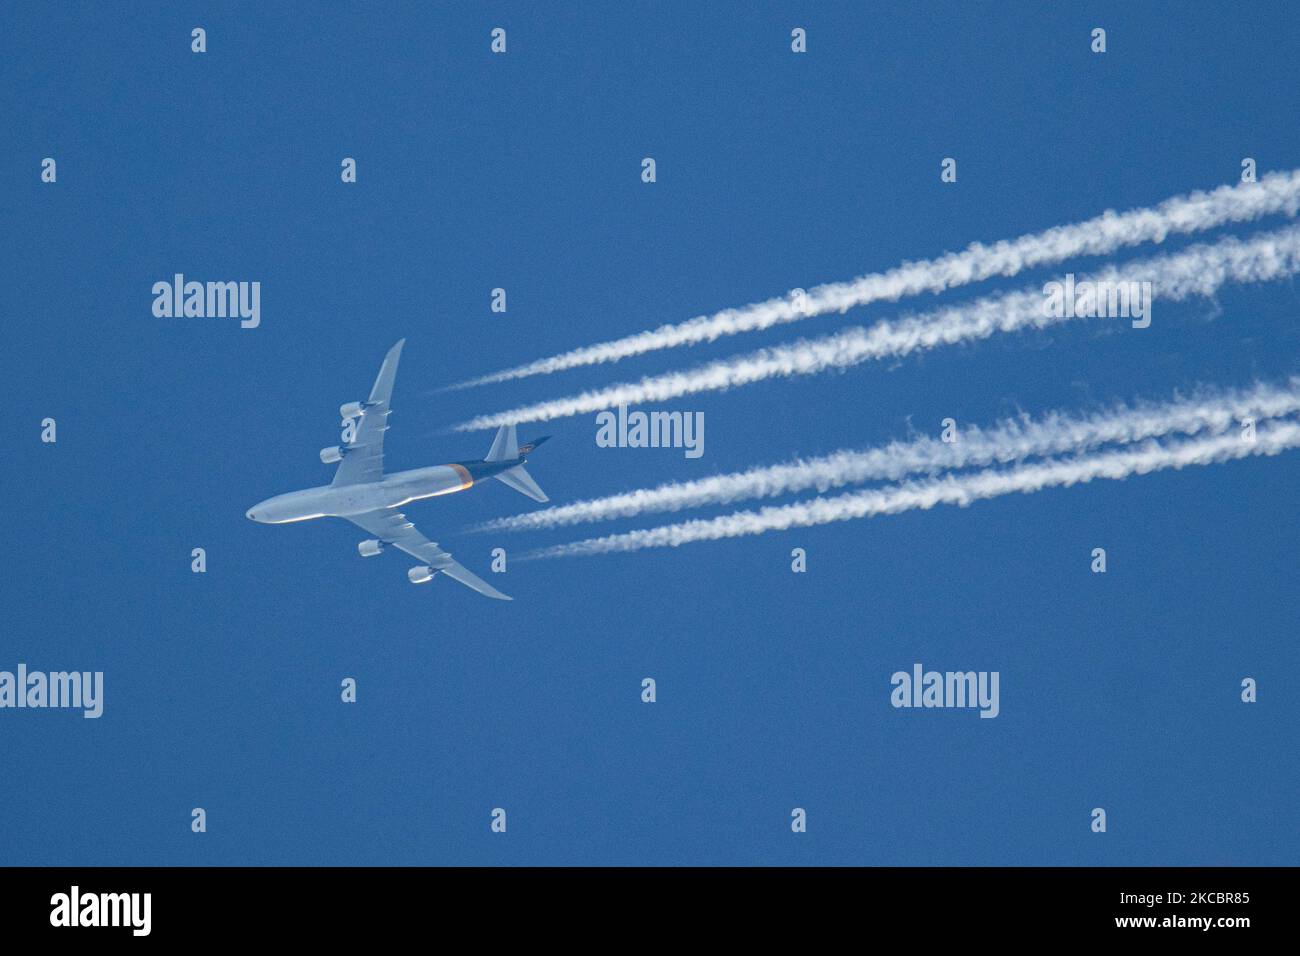 Un avión UPS Boeing 747-8F como se ve volando en el cielo azul sobre los  Países Bajos. El avión Jumbo Jet que sobrevuela está navegando a gran  altitud dejando rayas de condensación,